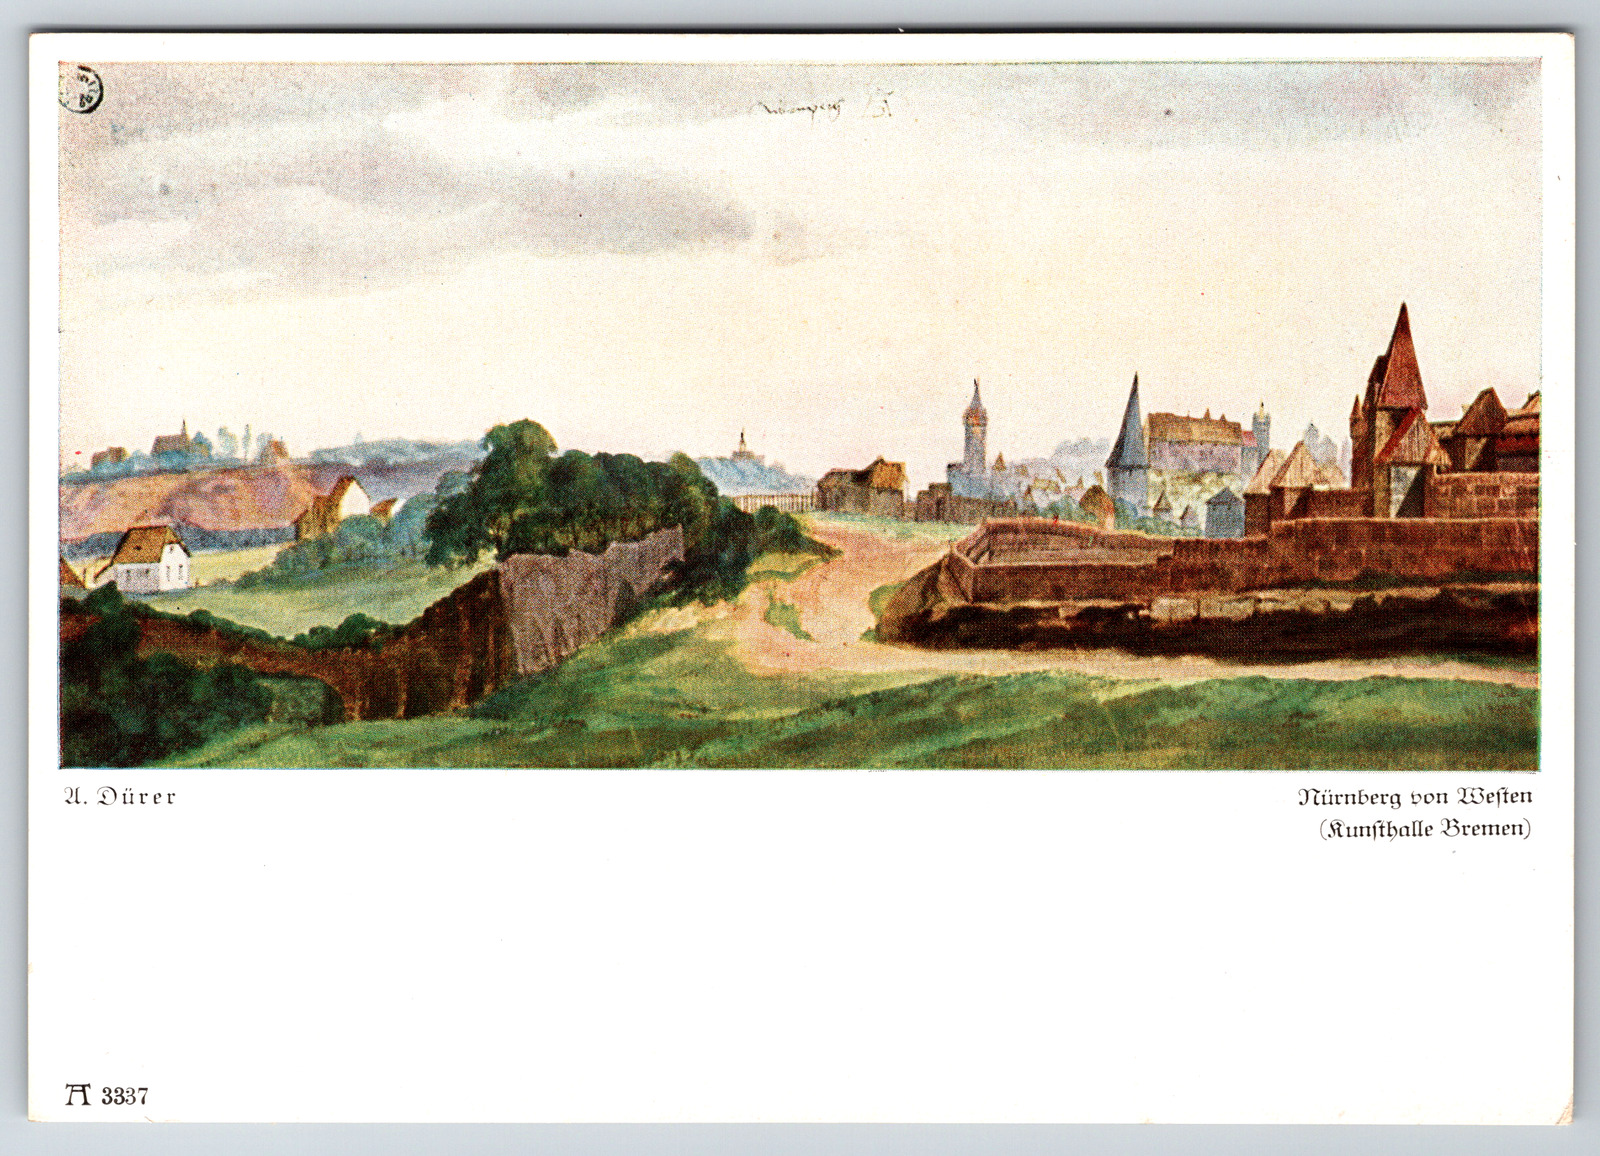 c1960s A. Durer Nuremburg From the West Art Kunsthalle Bremen Vintage Postcard